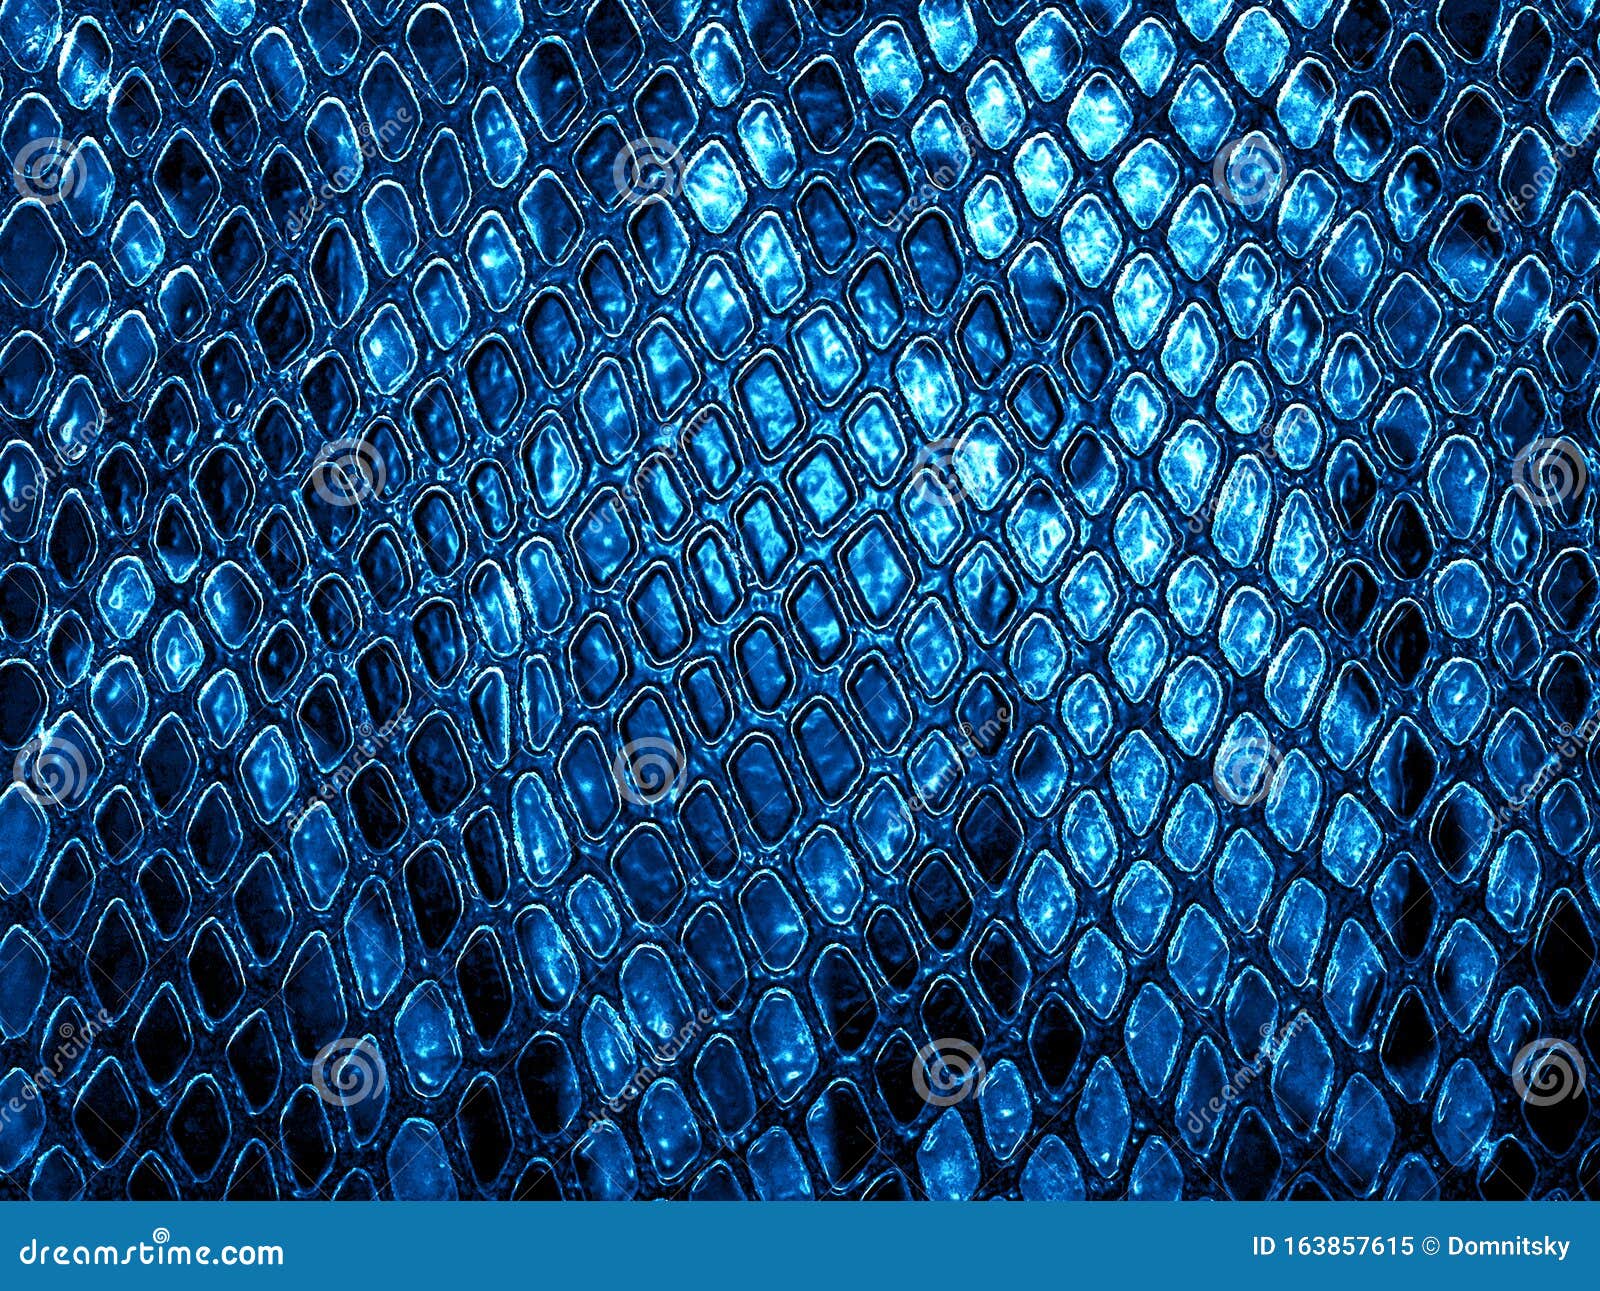 Blue snake skin background stock image. Image of background - 163857615